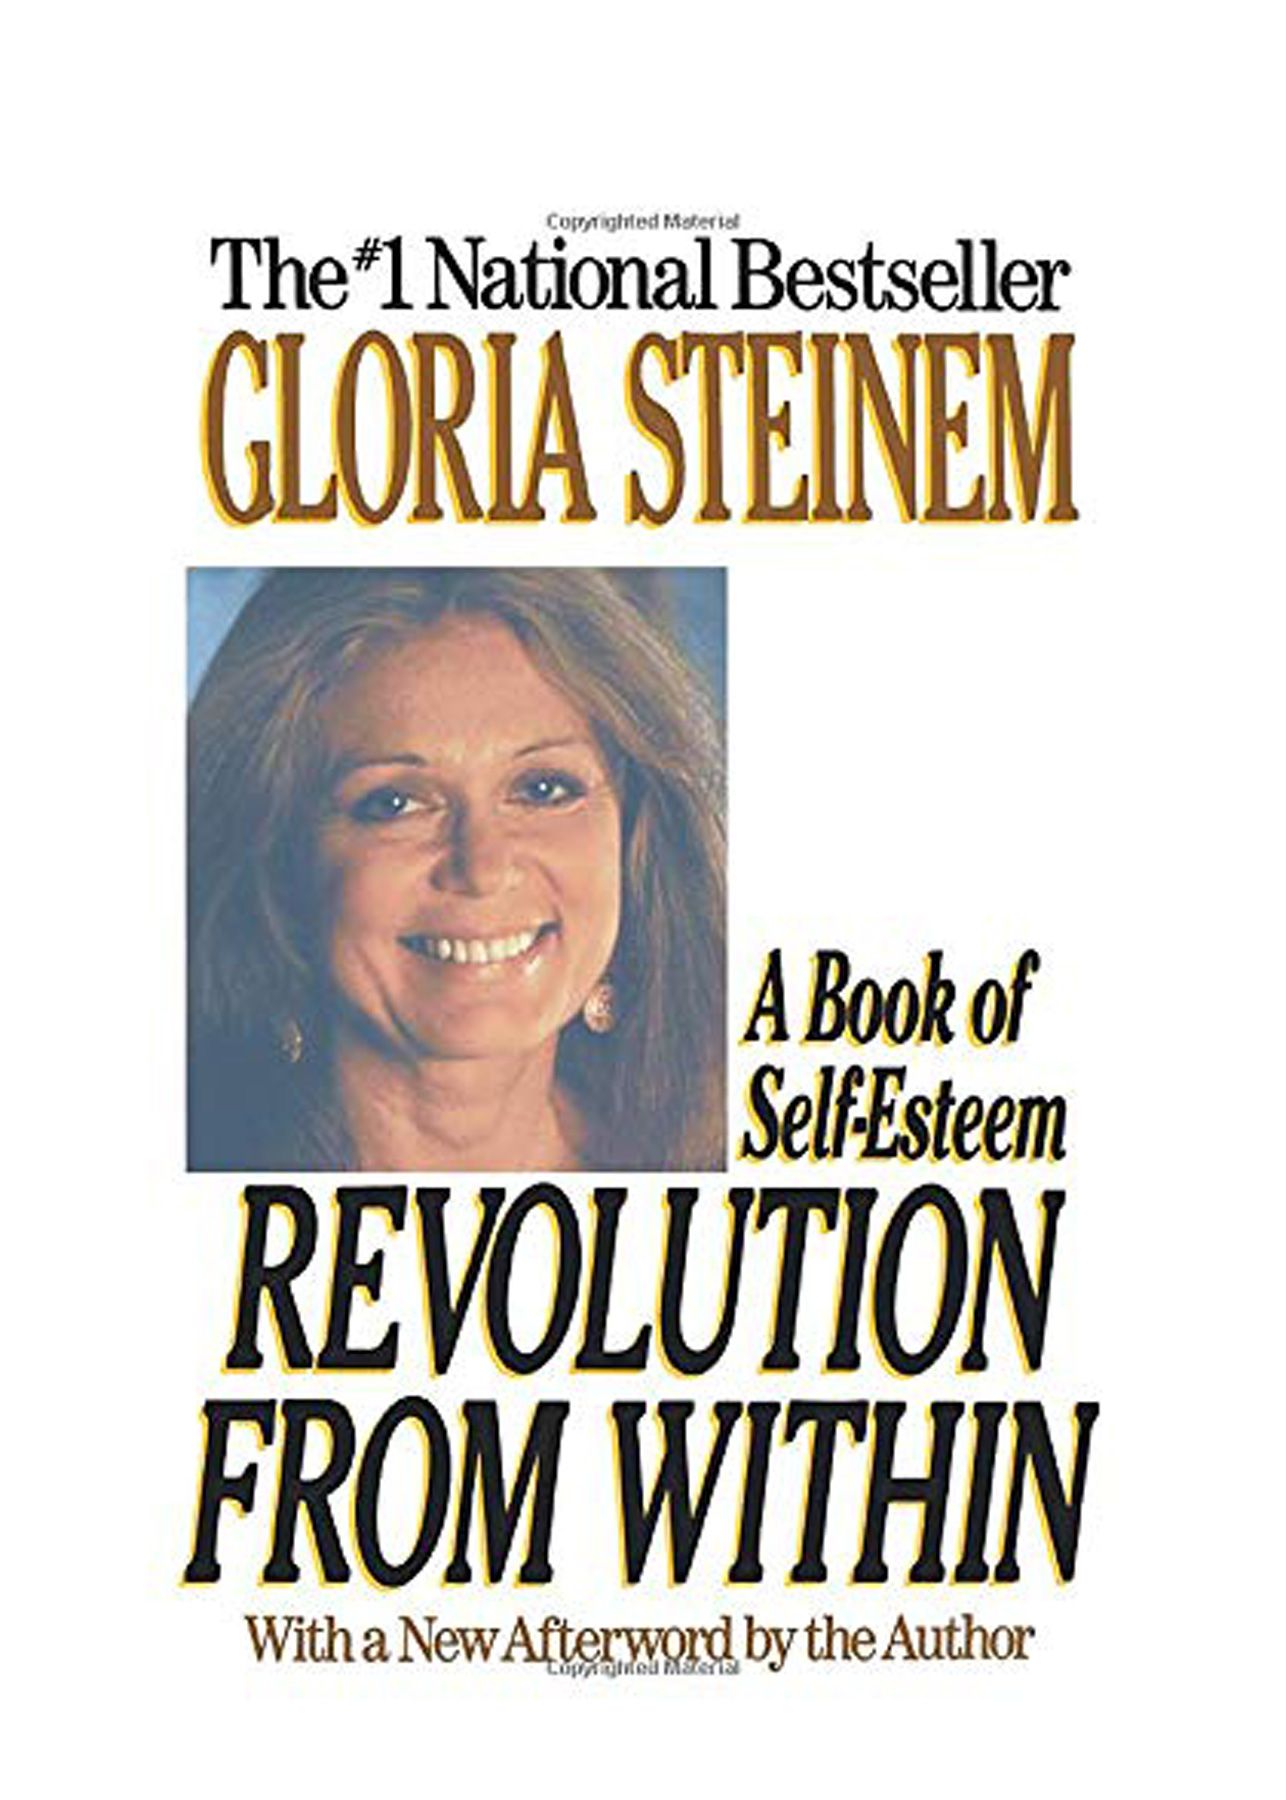 De bons livres à lire dans la vingtaine : 'La révolution de l'intérieur' de Gloria Steinem